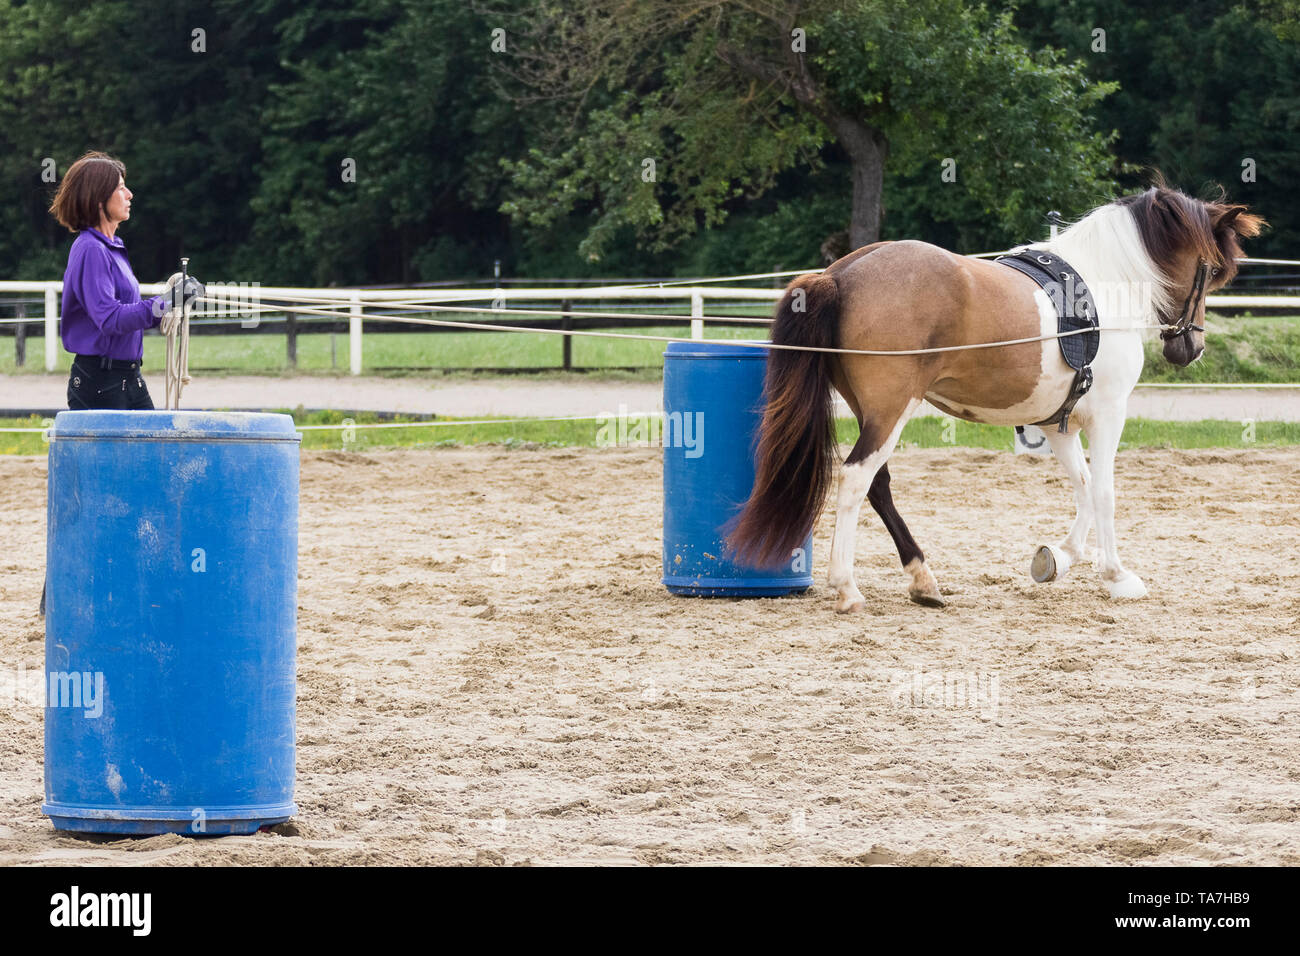 Conducción de tierra, también llamado palangre: enseñar a un joven caballo a avanzar con una persona caminando detrás de ella, un precursor tanto para la conducción de cables y tener riendas utilizada por un jinete montado. Austria Foto de stock